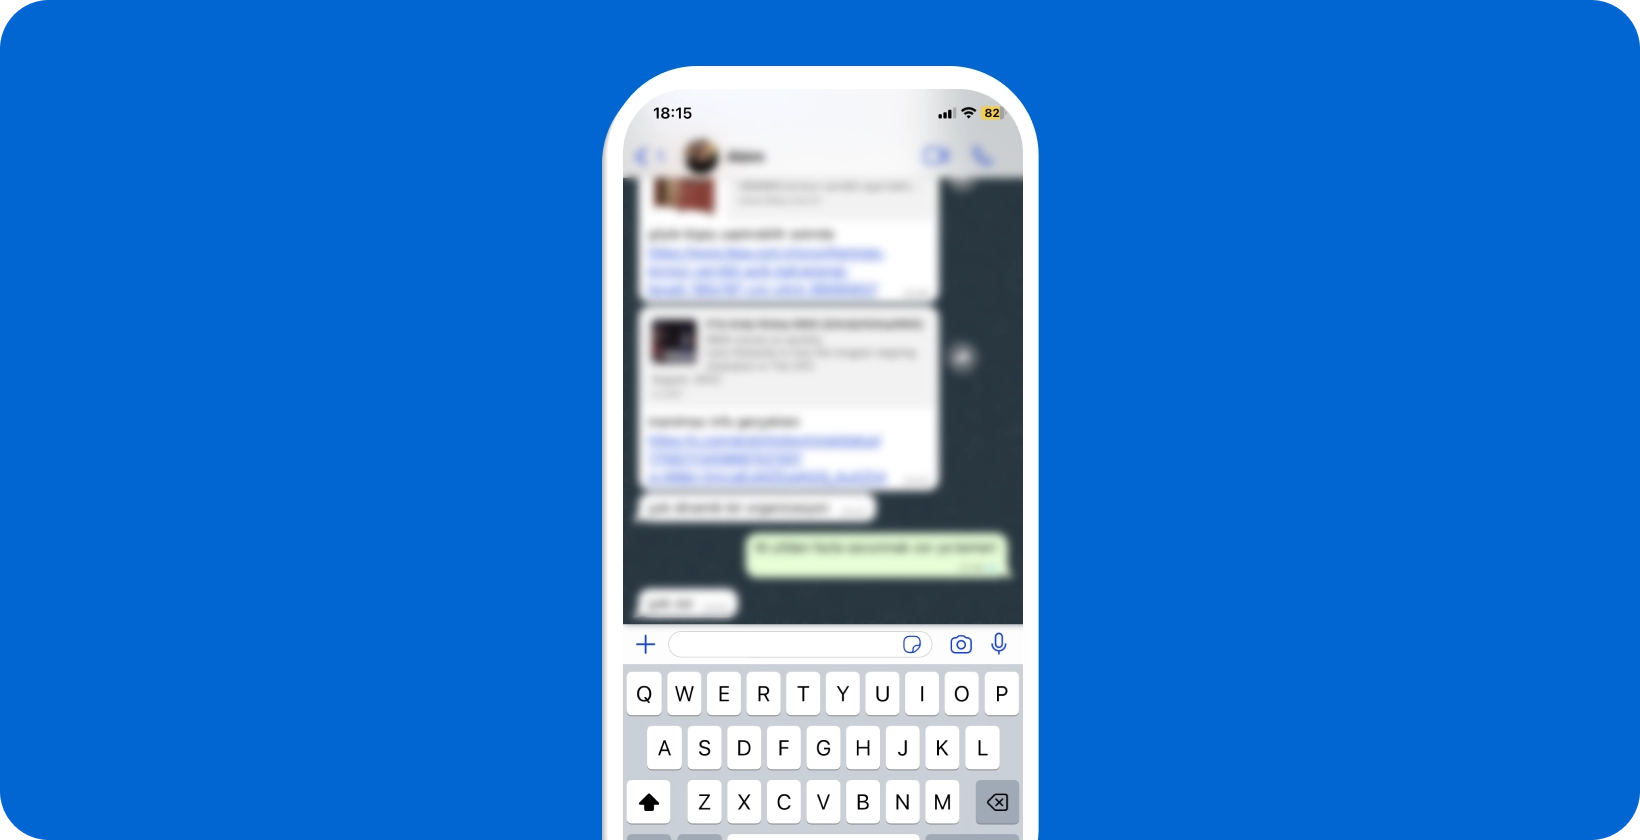 Smartphone zobrazující aktivní konverzaci WhatsApp s otevřenou klávesnicí, připravený pro hlasové diktování.